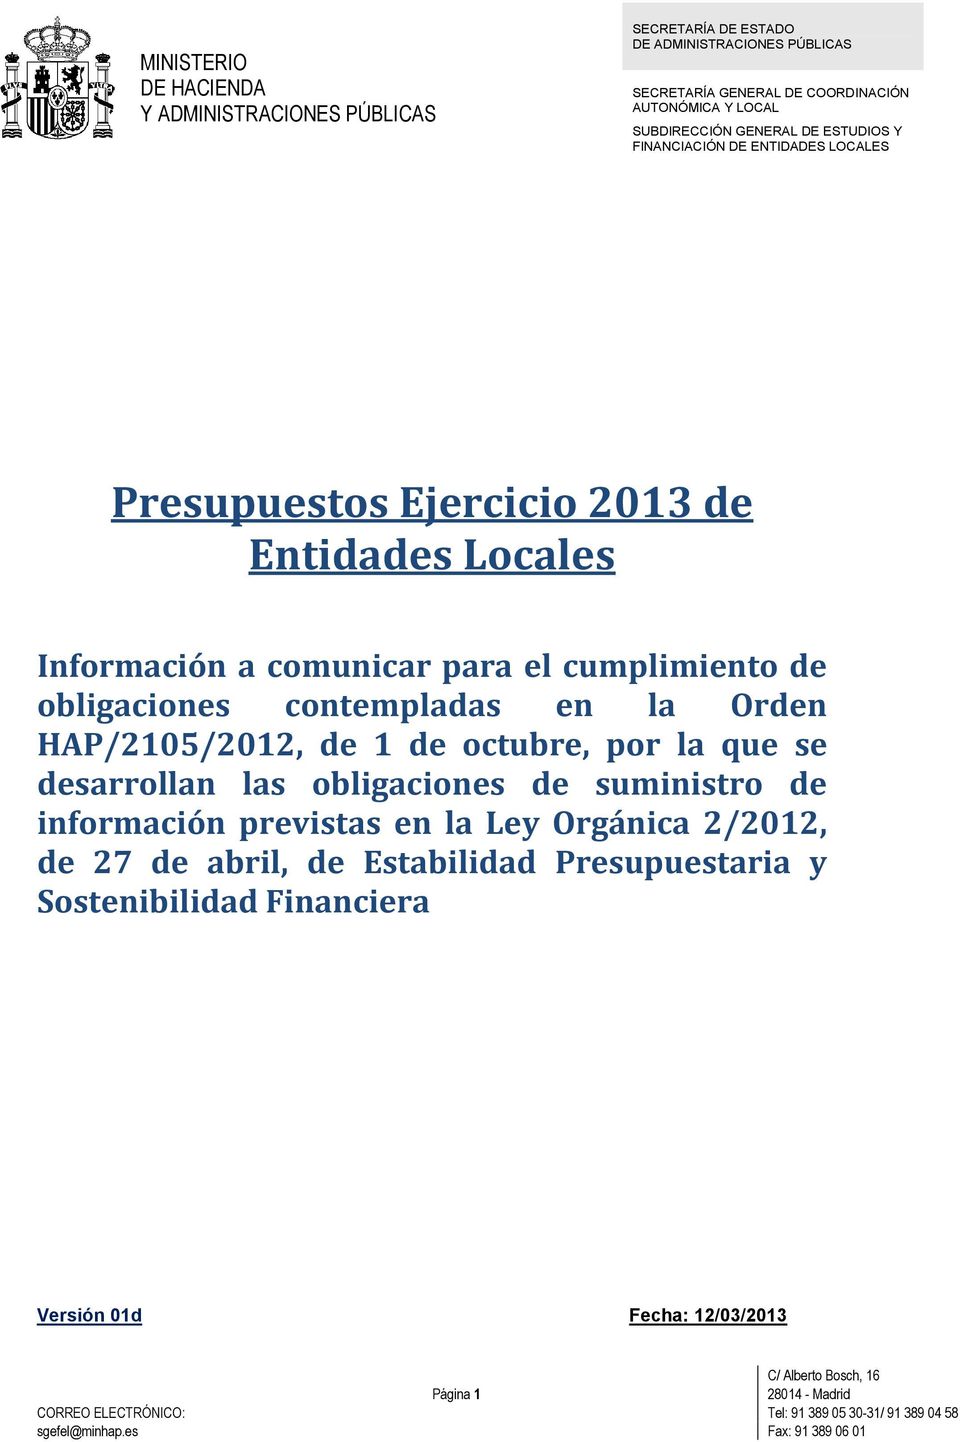 HAP/2105/2012, de 1 de octubre, por la que se desarrollan las obligaciones de suministro de información previstas en la Ley Orgánica 2/2012, de 27 de abril, de Estabilidad